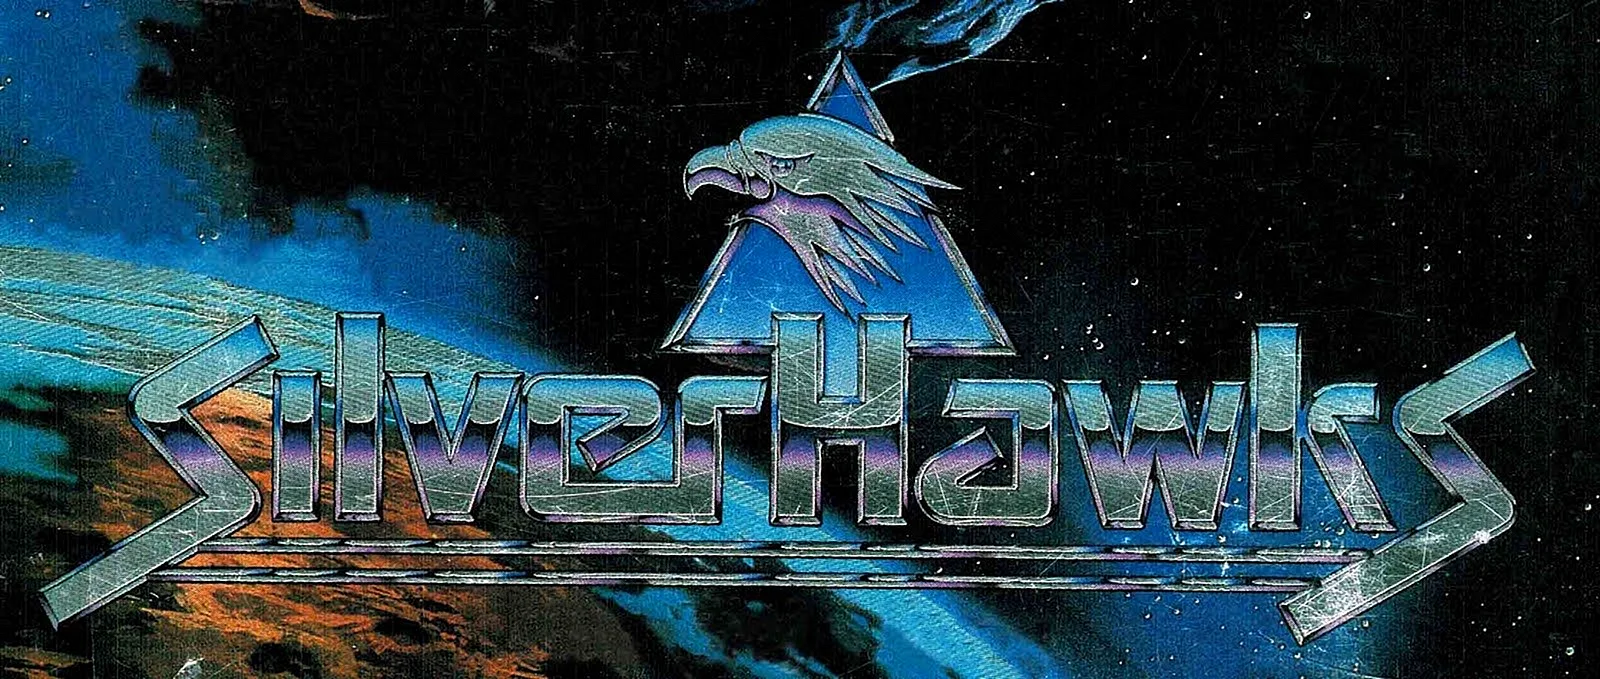 Silverhawks Logo Wallpaper